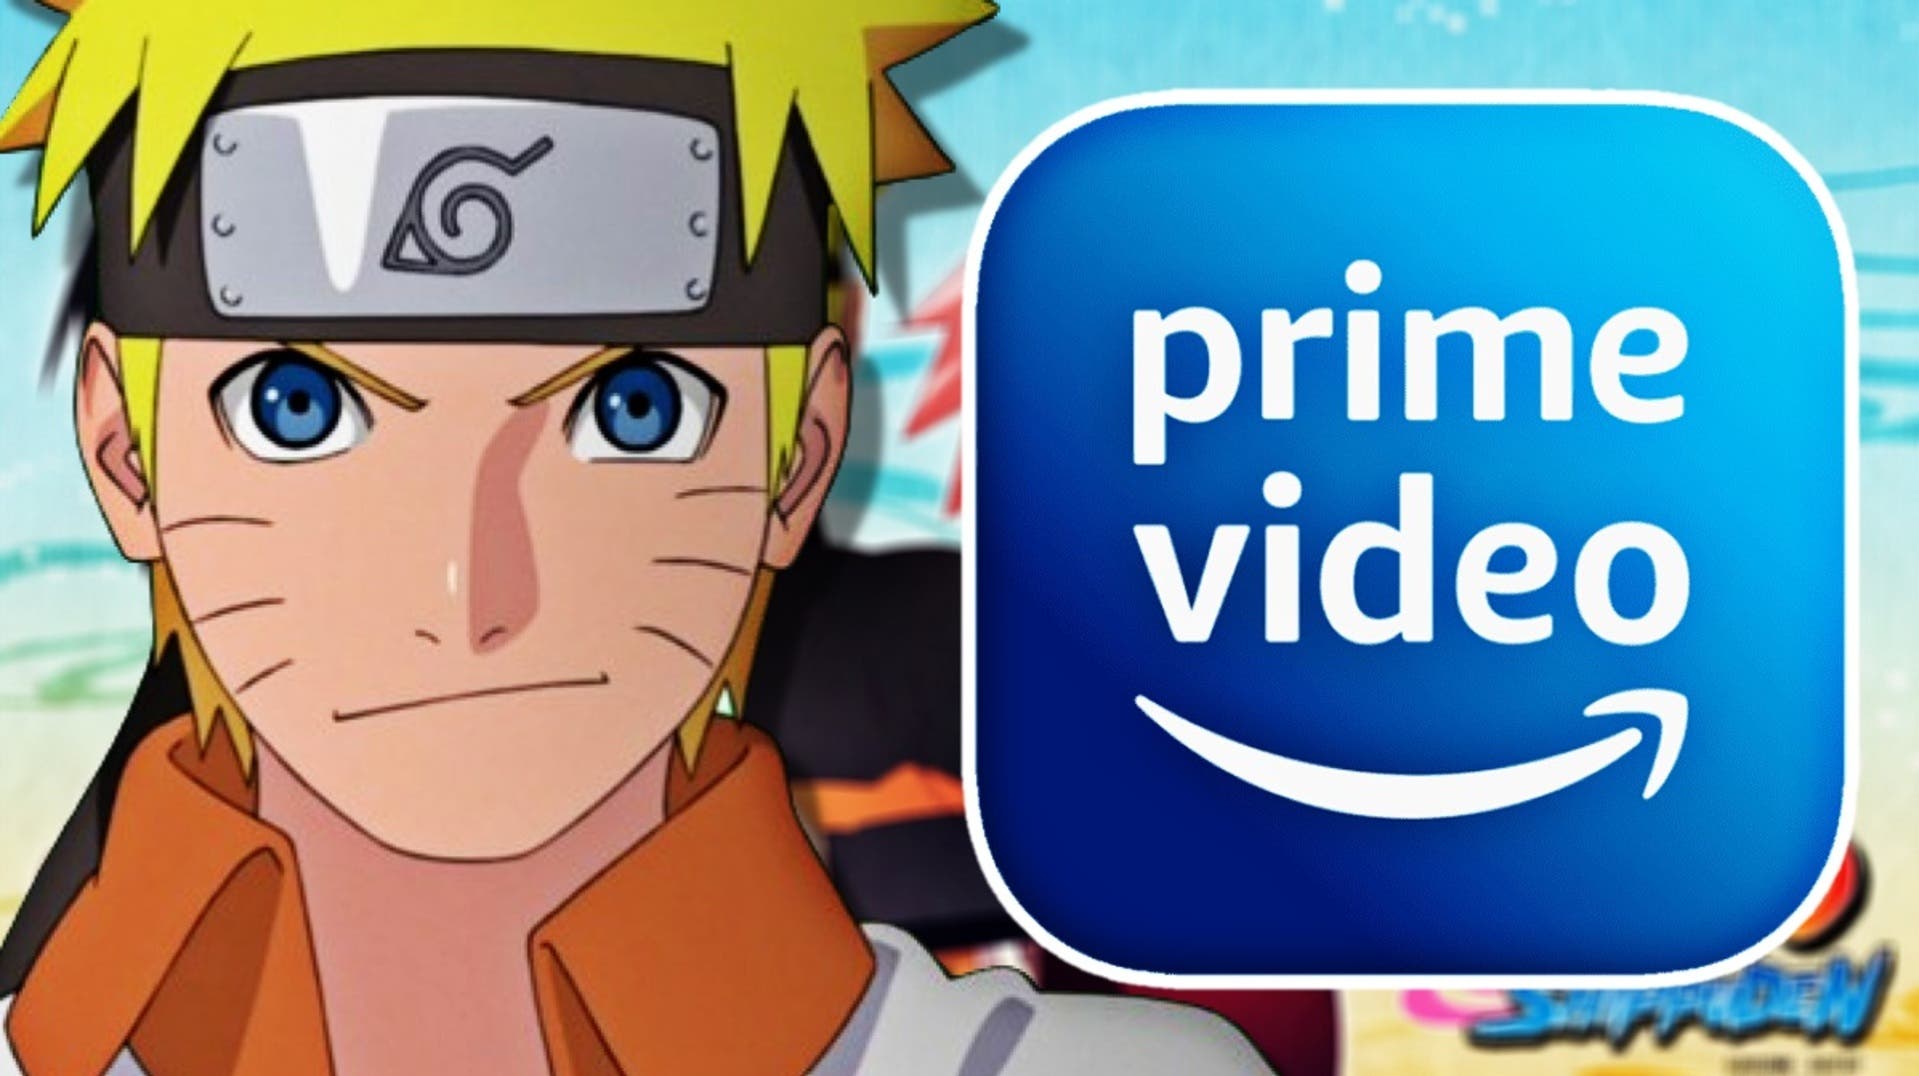 Naruto Shippuden':  Prime Video amplía su catálogo con dos